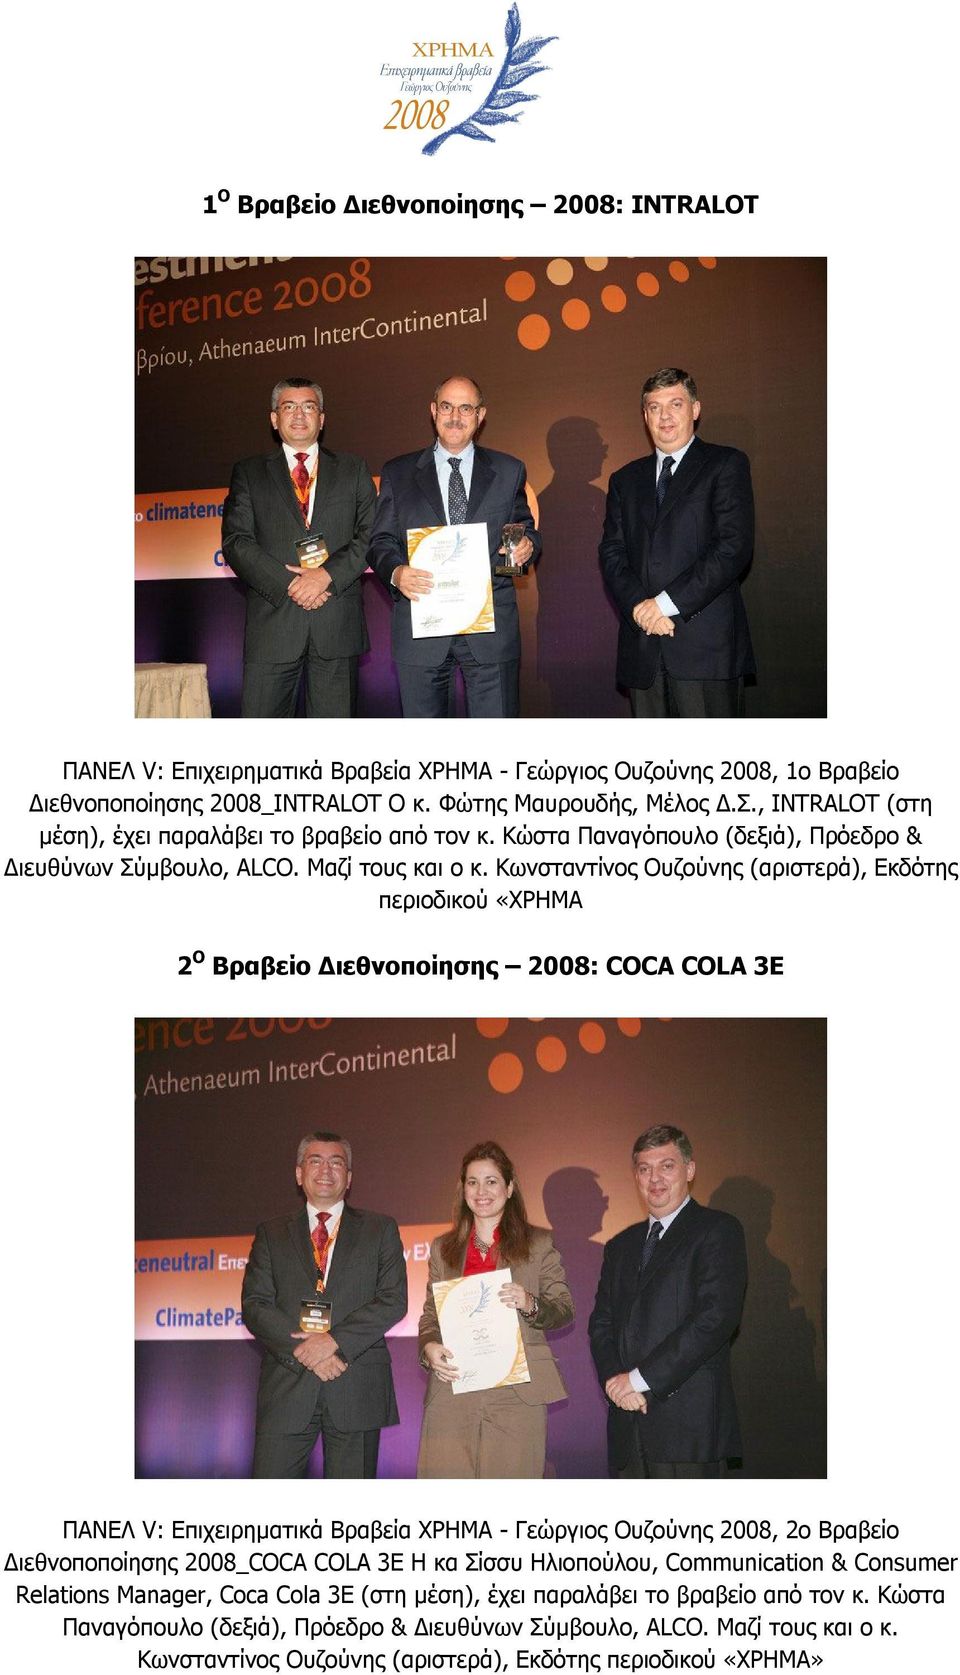 Κωνσταντίνος Ουζούνης (αριστερά), Εκδότης περιοδικού «ΧΡΗΜΑ 2 Ο Βραβείο Διεθνοποίησης 2008: COCA COLA 3E ΠΑΝΕΛ V: Επιχειρηματικά Βραβεία ΧΡΗΜΑ - Γεώργιος Ουζούνης 2008, 2ο Βραβείο Διεθνοποποίησης